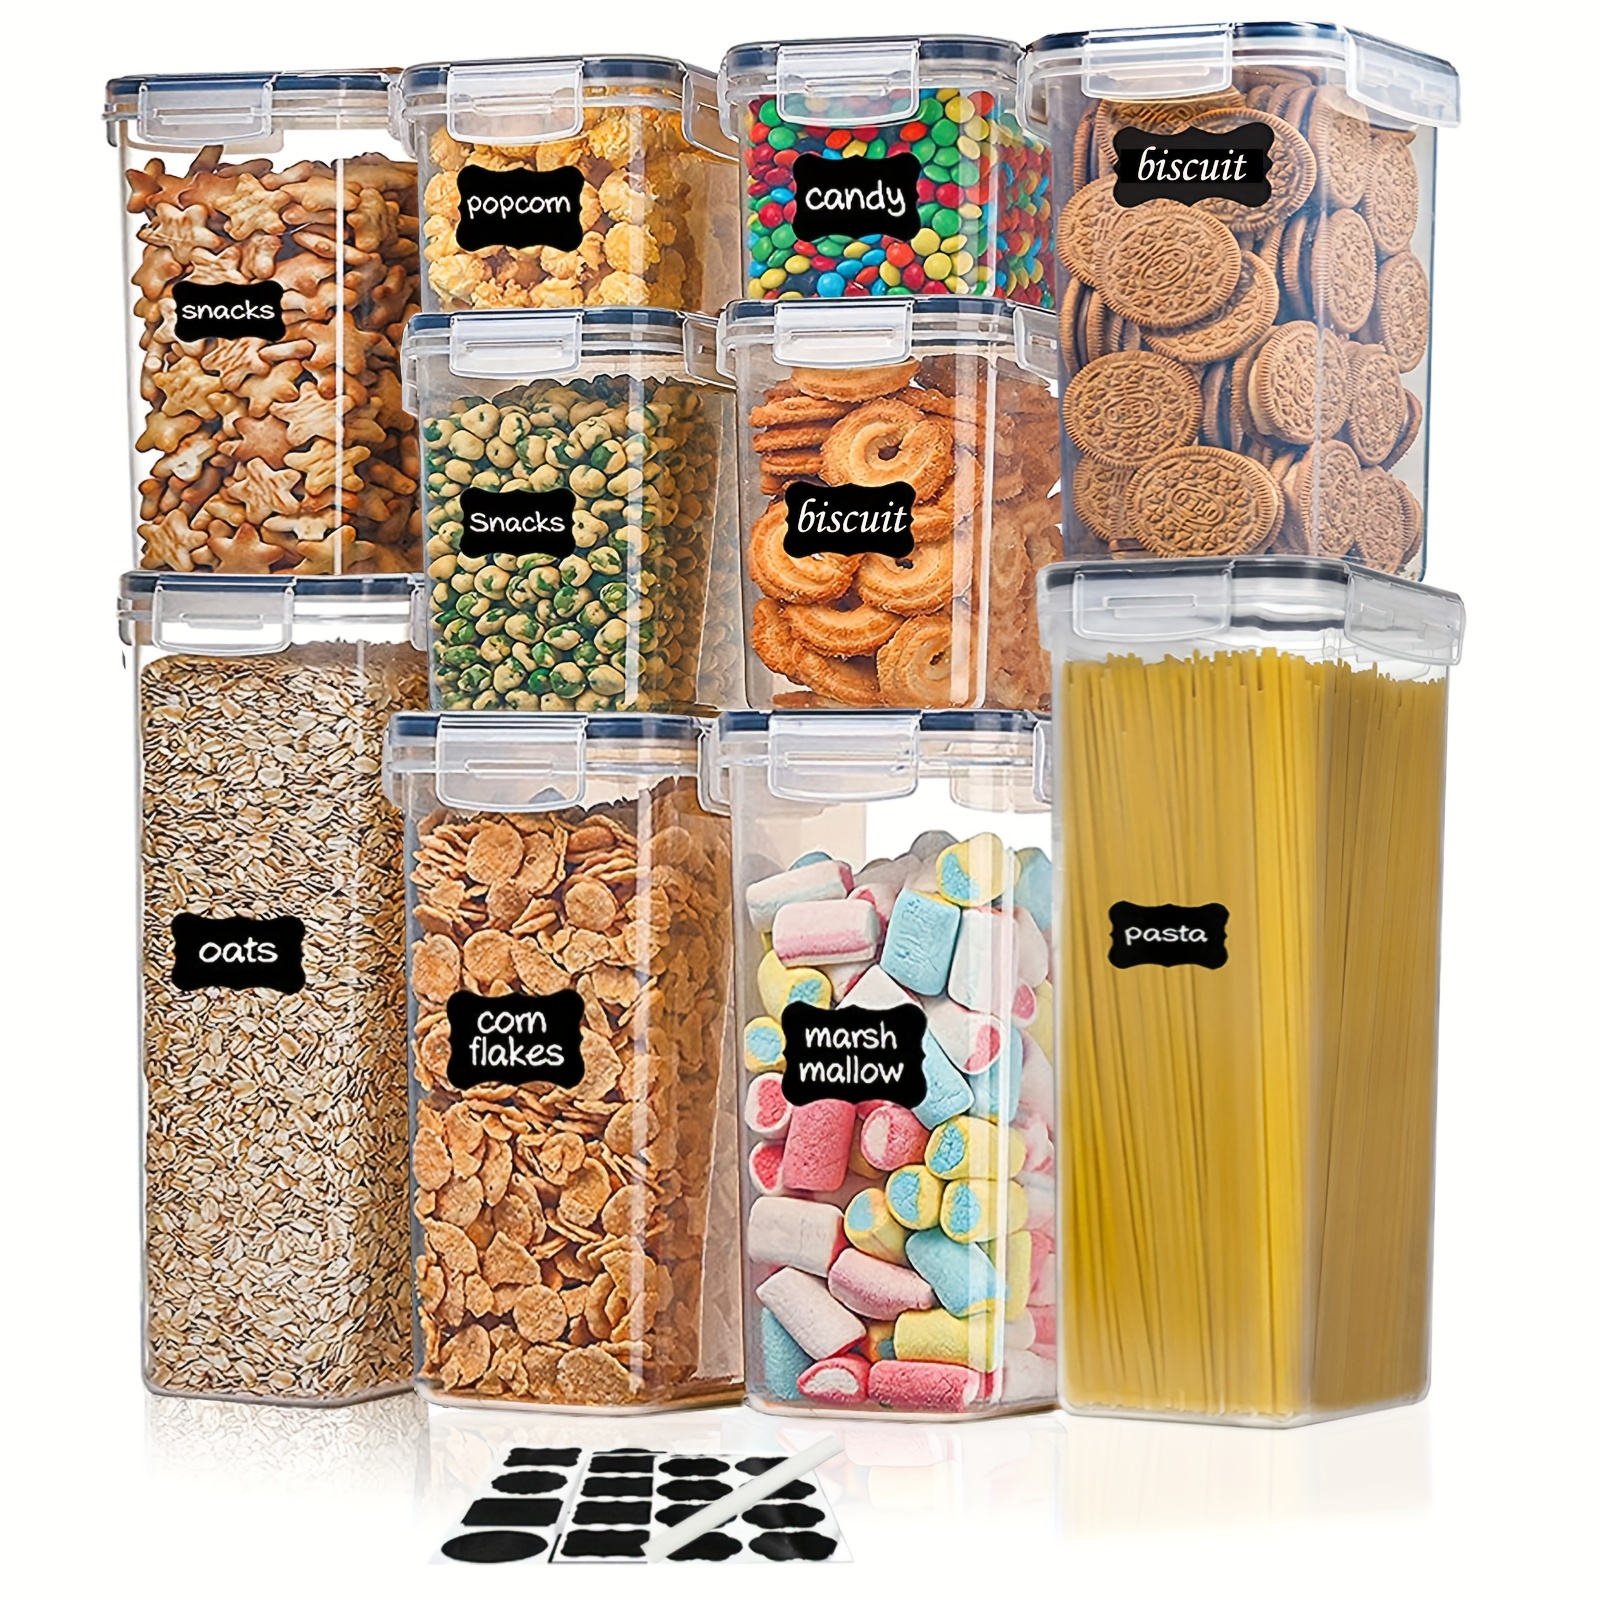 Contenitori ermetici per la conservazione degli alimenti con coperchi, 24  pezzi di plastica cucina e dispensa organizzazione contenitori per cereali,  cibo secco, farina e zucchero, senza bpa